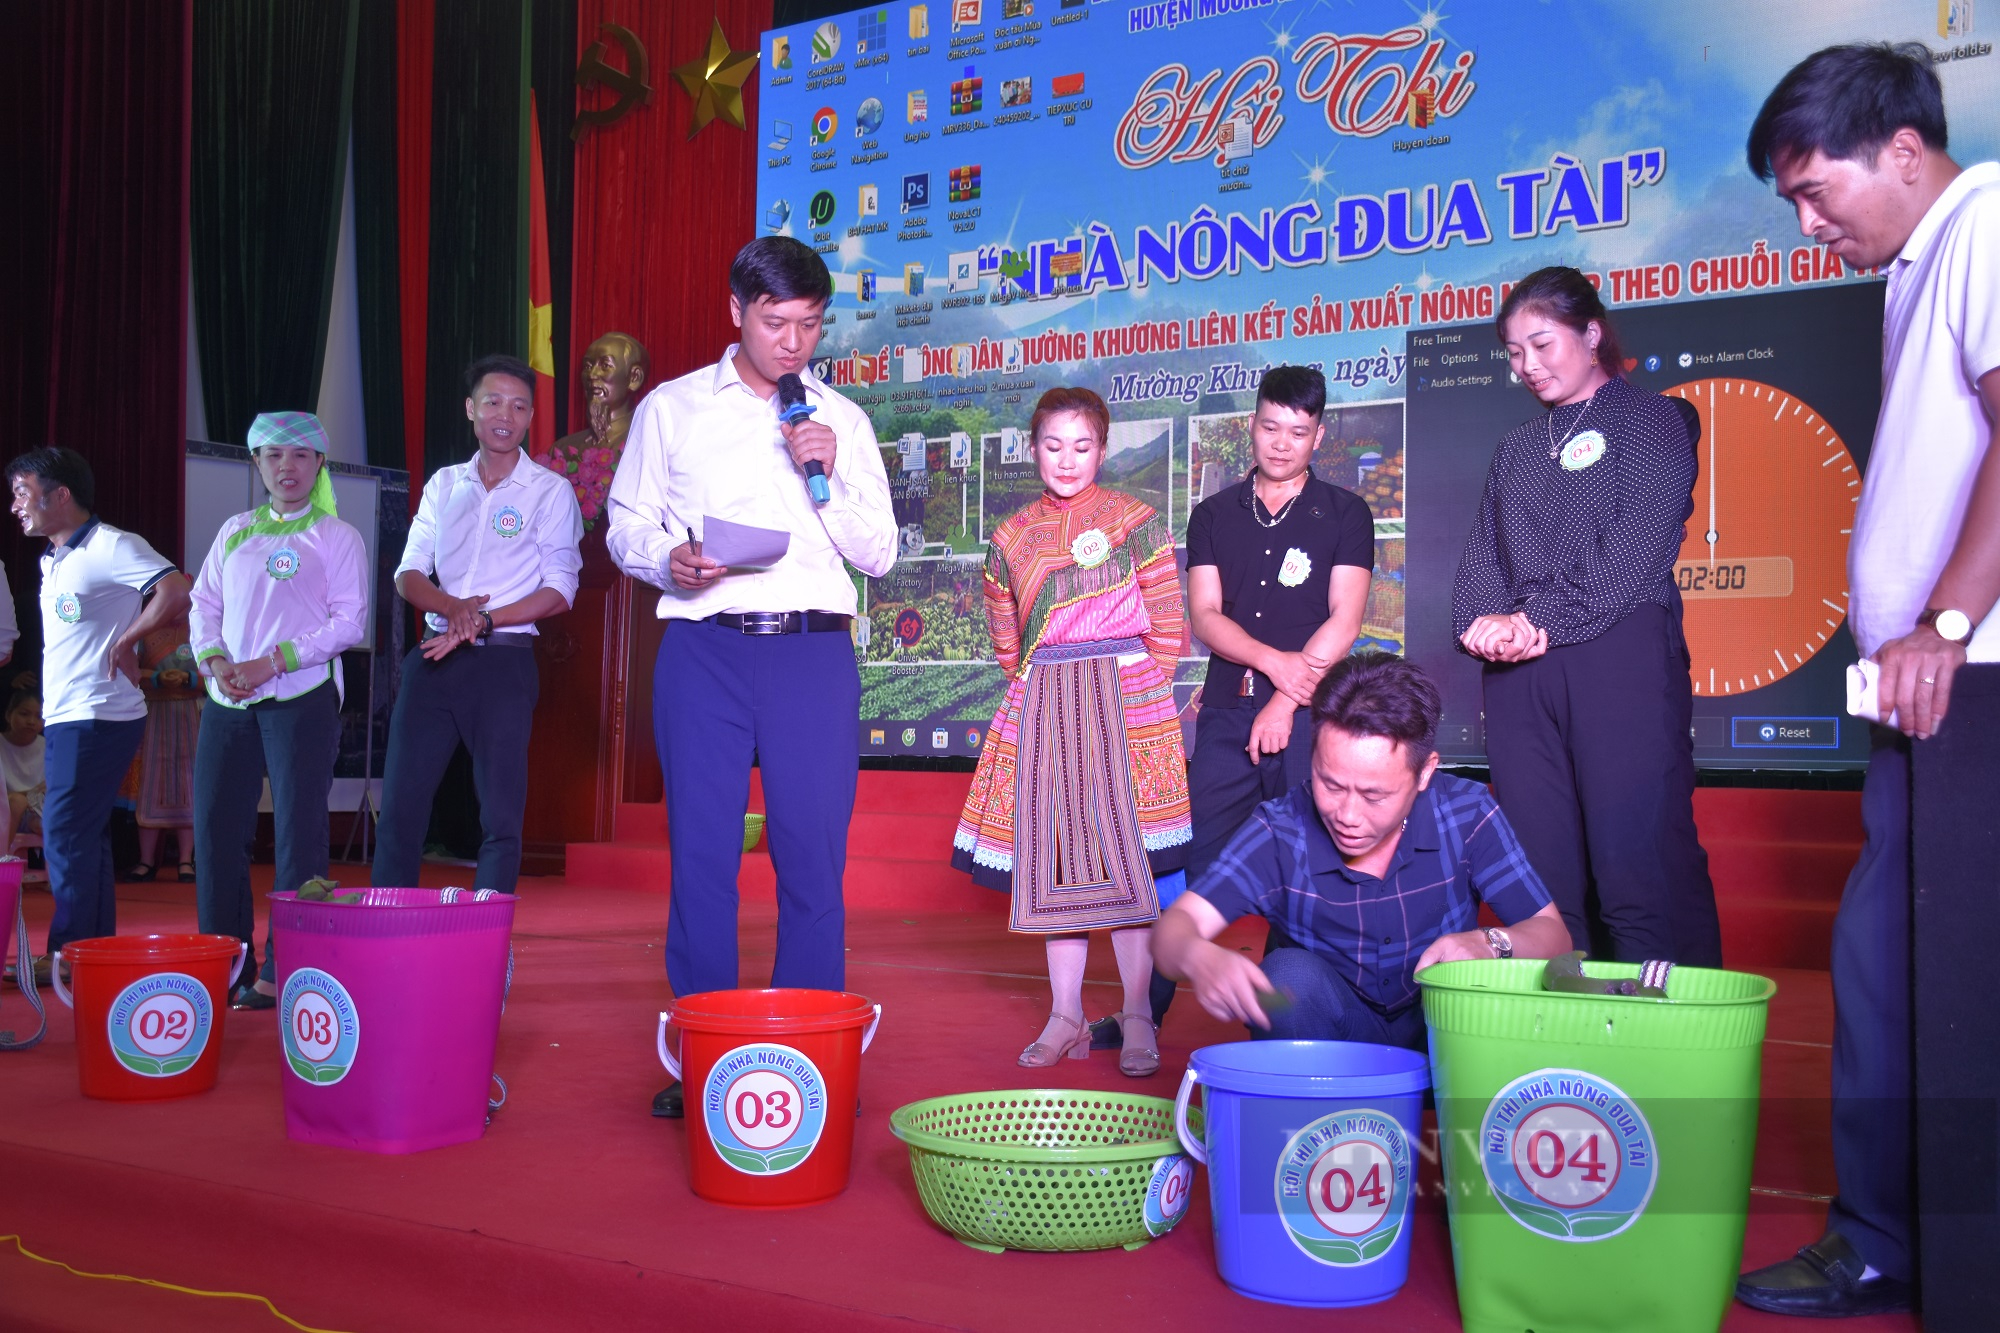 Hội Nông dân huyện Mường Khương (Lào Cai) tổ chức Hội thi “Nhà nông đua tài” năm 2022 - Ảnh 2.